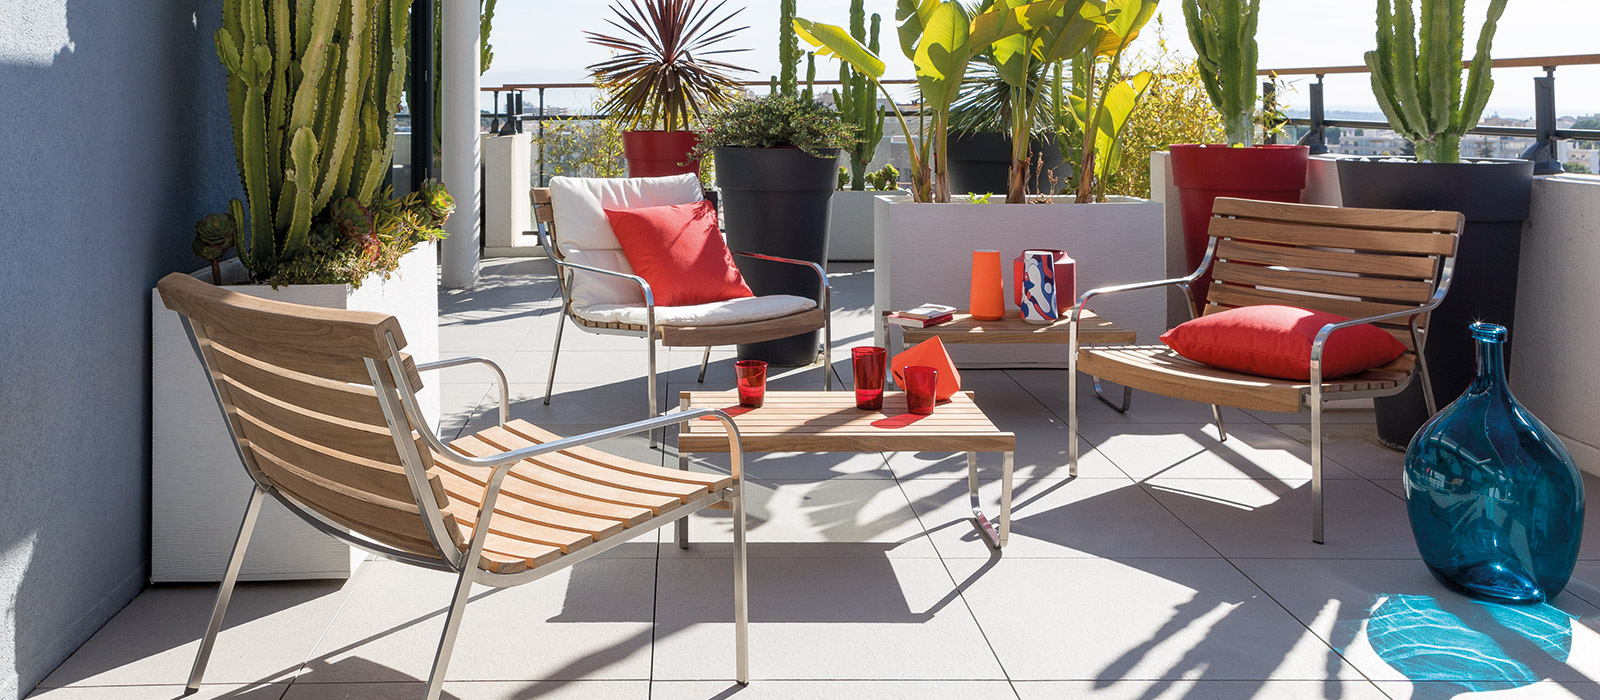 Modern Design Garden Armchairs Outdoor Luxury Unopi with dimensions 1600 X 700